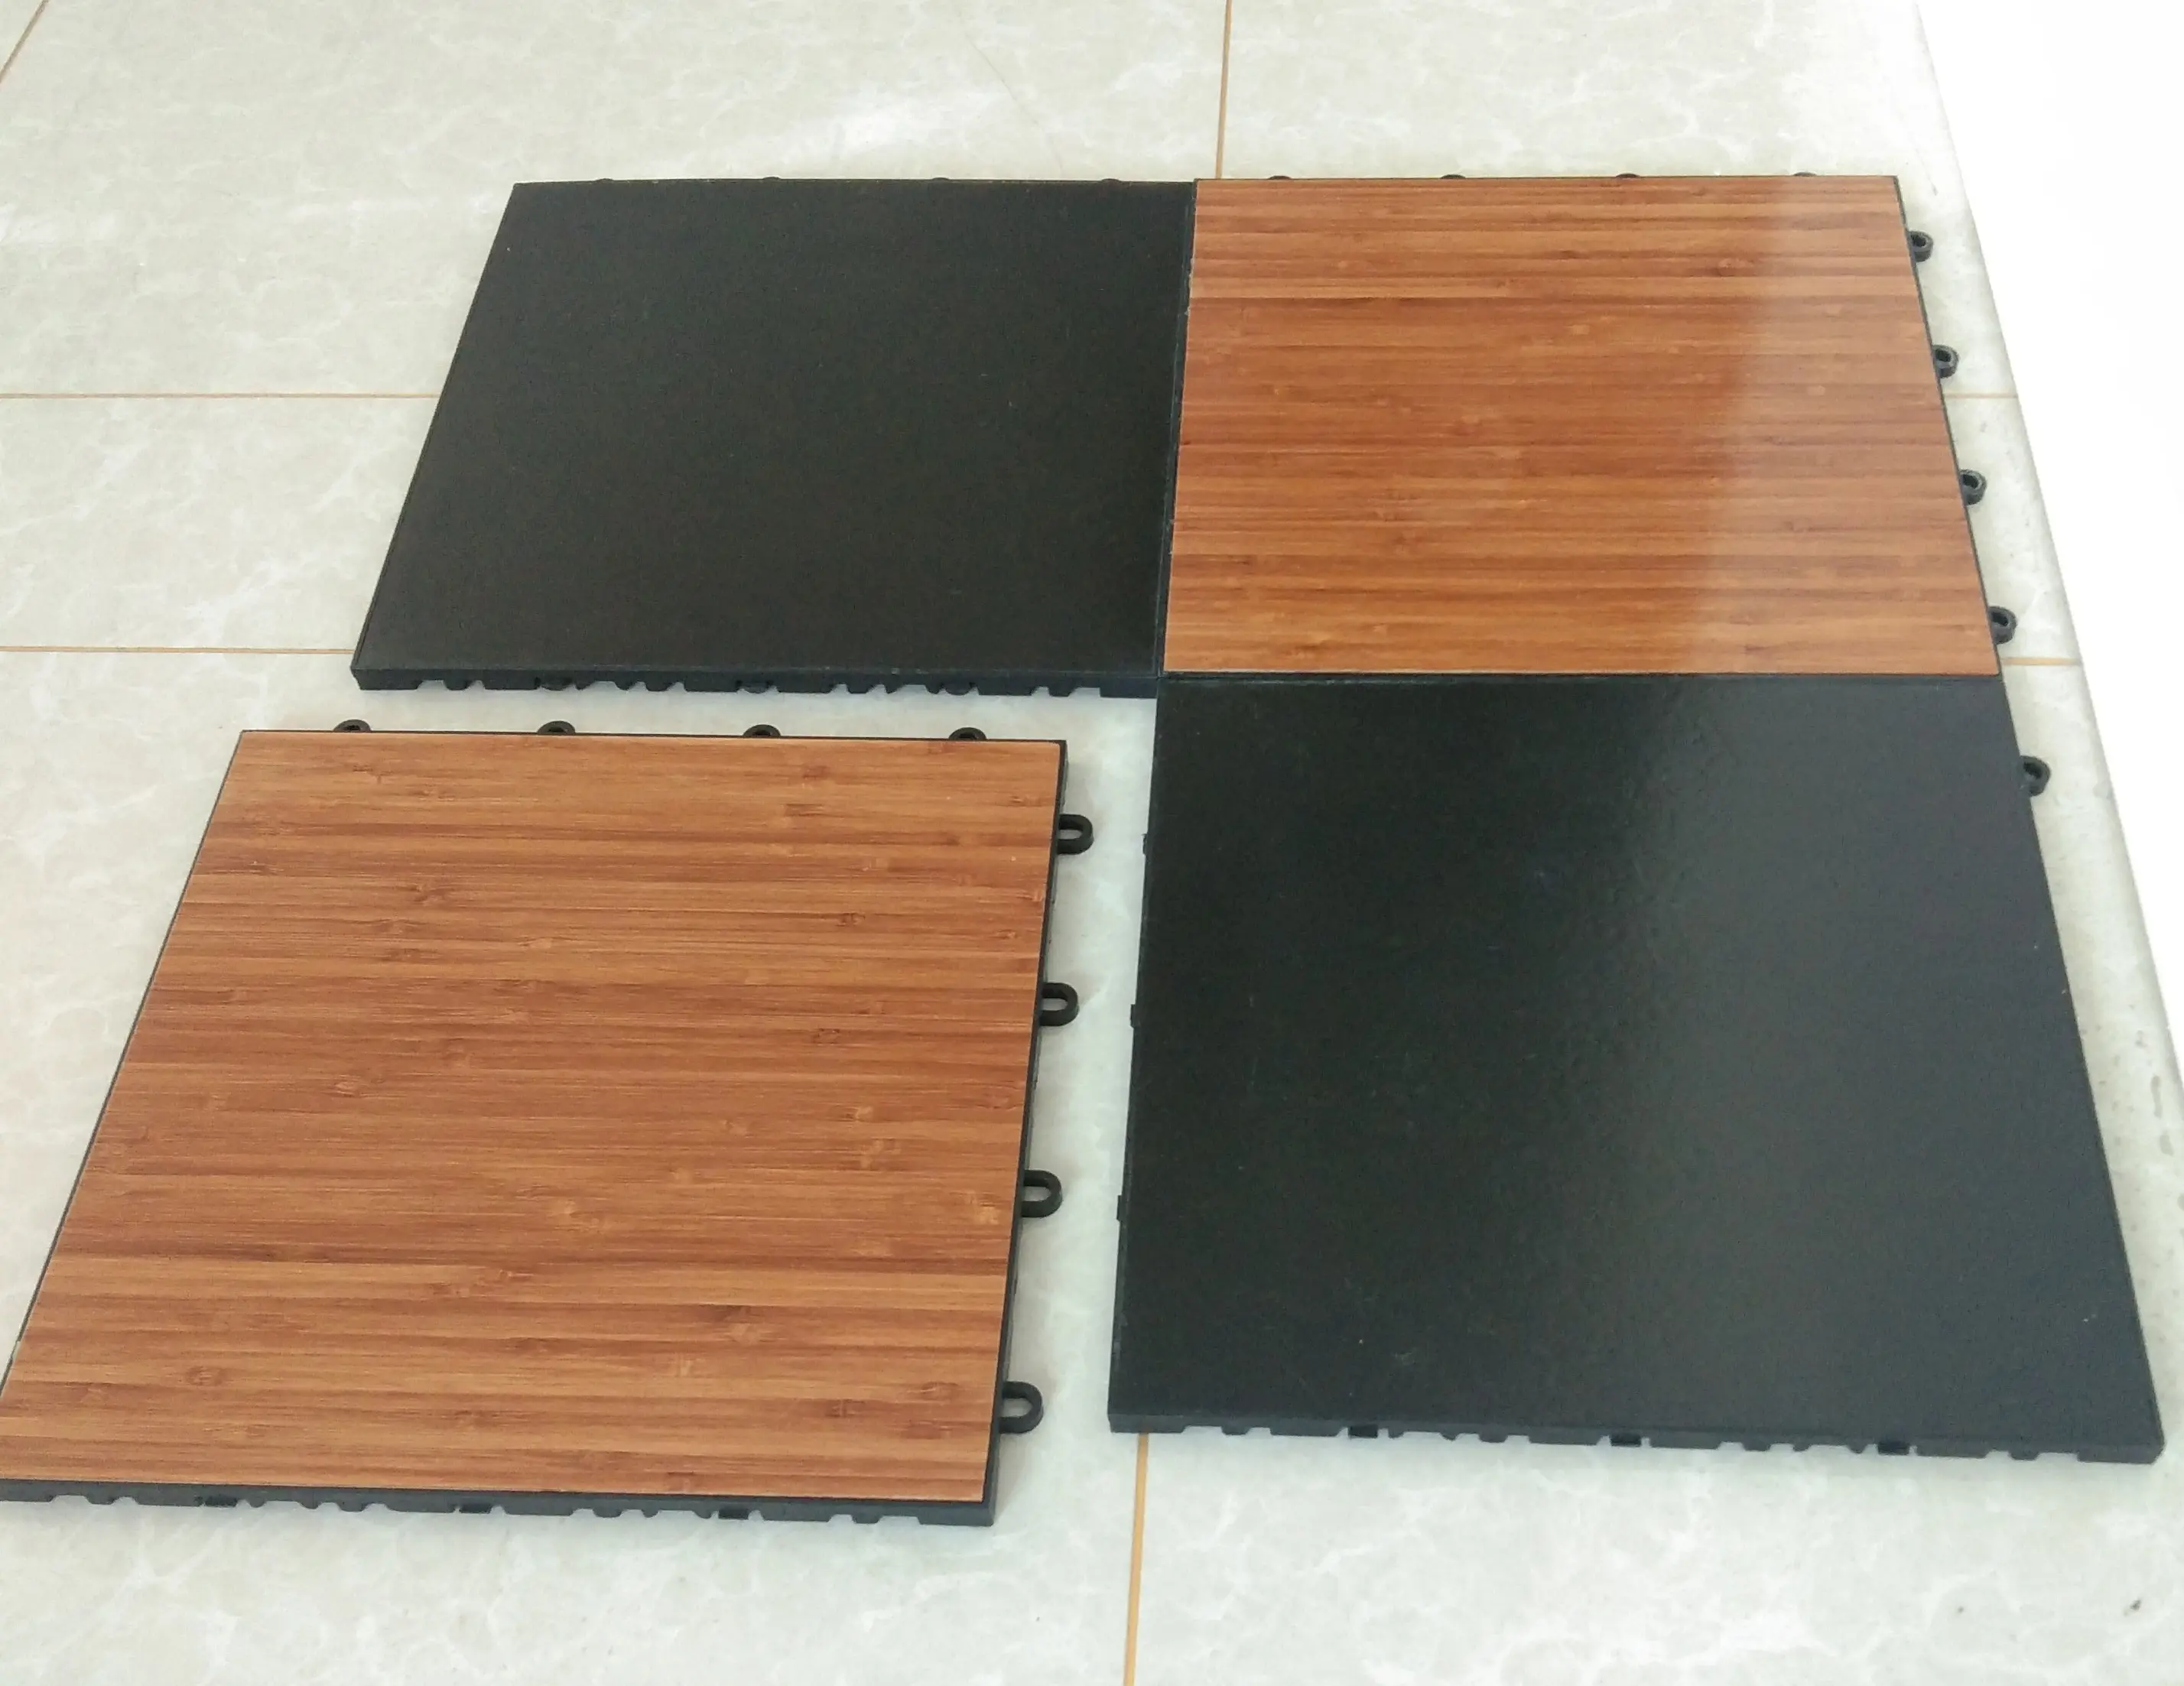 Qingdao Removable used wooden dance floor for sale,cheap portable wooden dance floor,interactive wooden dance floor